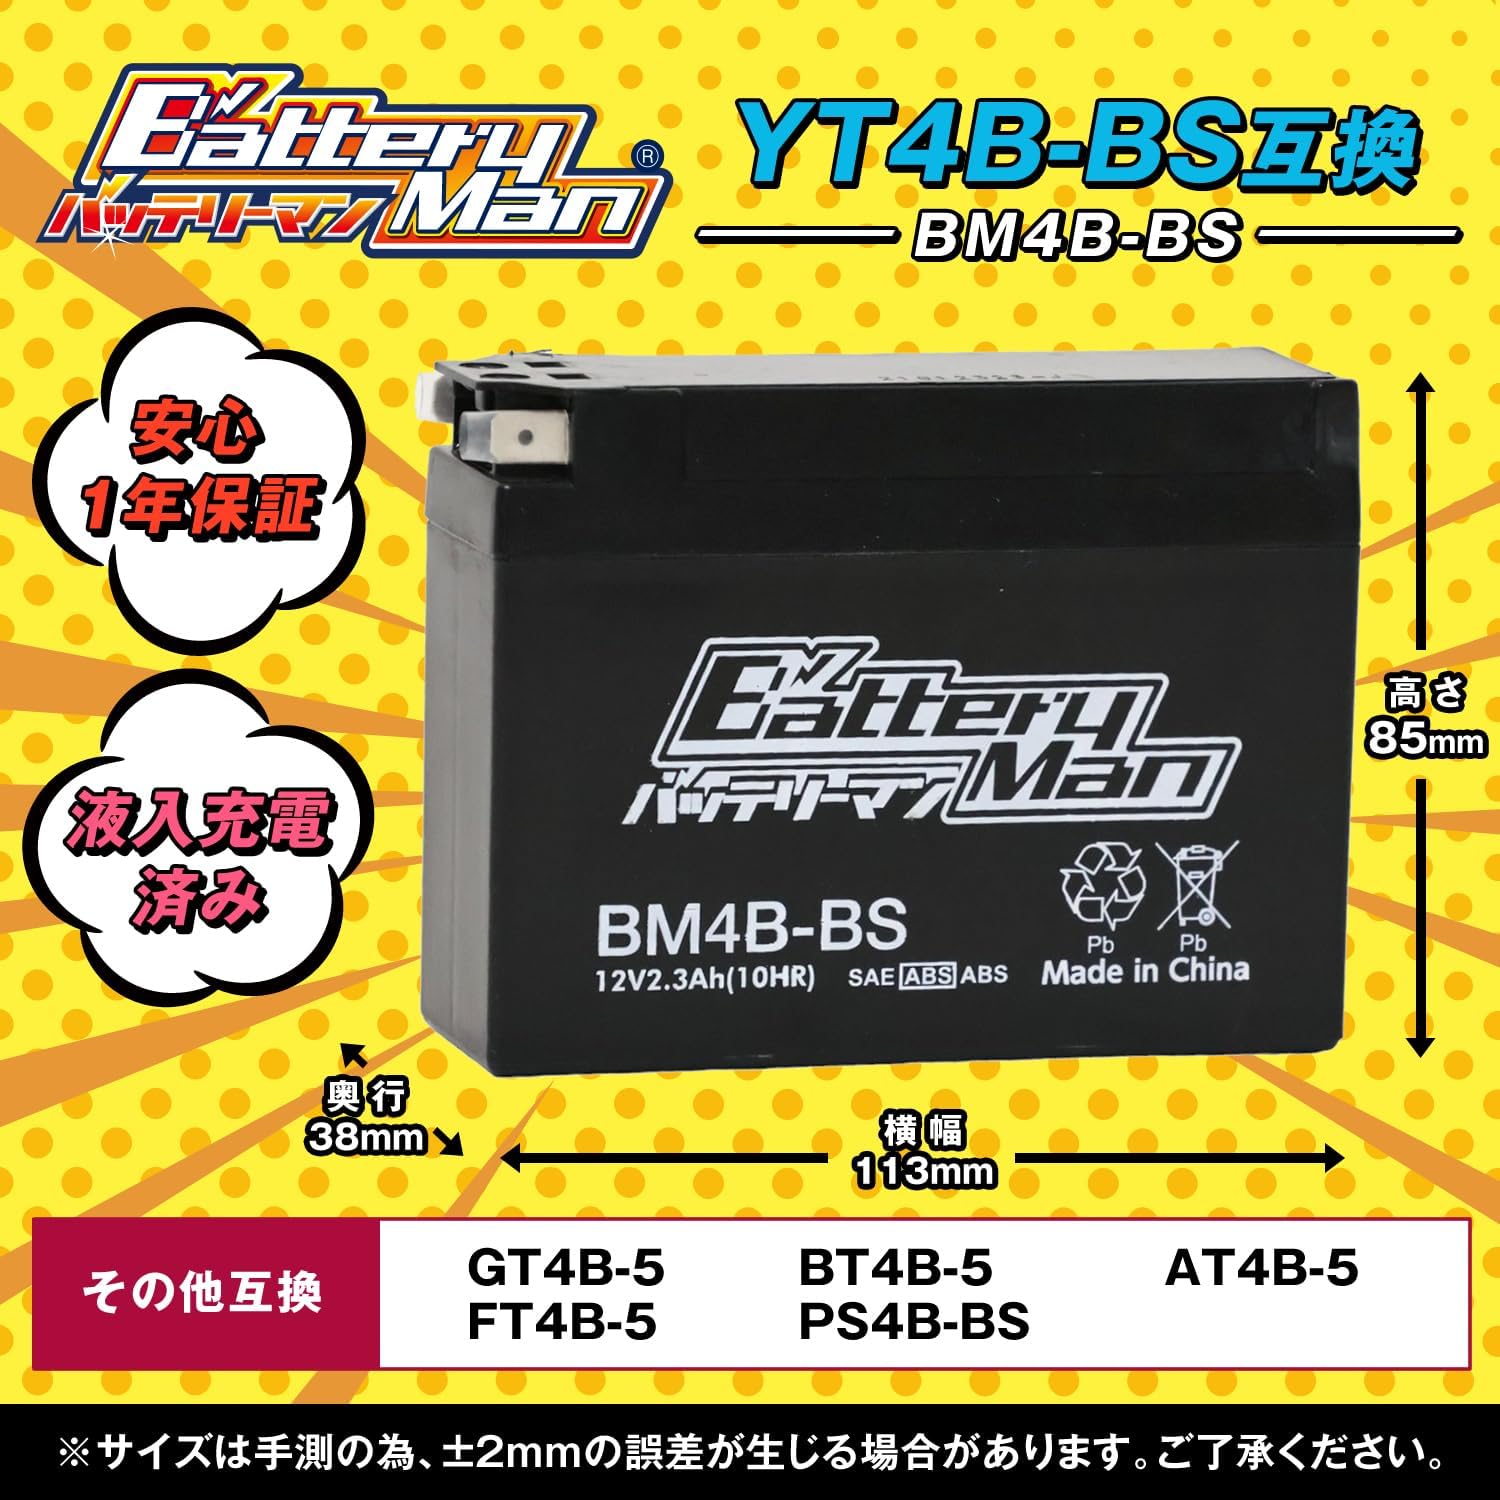 BM4B-BS(YT4B-BSAGT4B-5 ݊)(t[d)